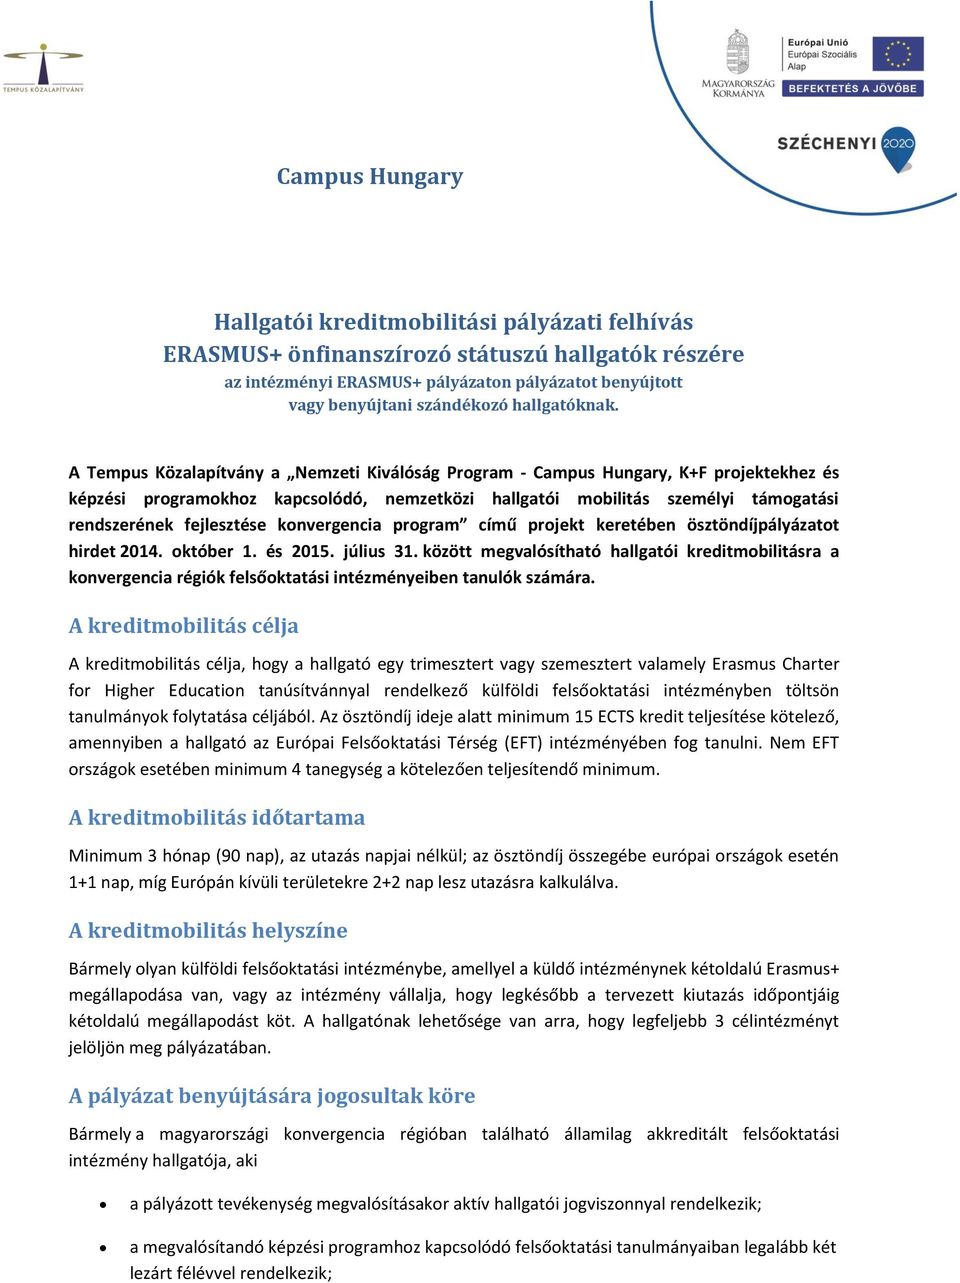 A Tempus Közalapítvány a Nemzeti Kiválóság Program - Campus Hungary, K+F projektekhez és képzési programokhoz kapcsolódó, nemzetközi hallgatói mobilitás személyi támogatási rendszerének fejlesztése